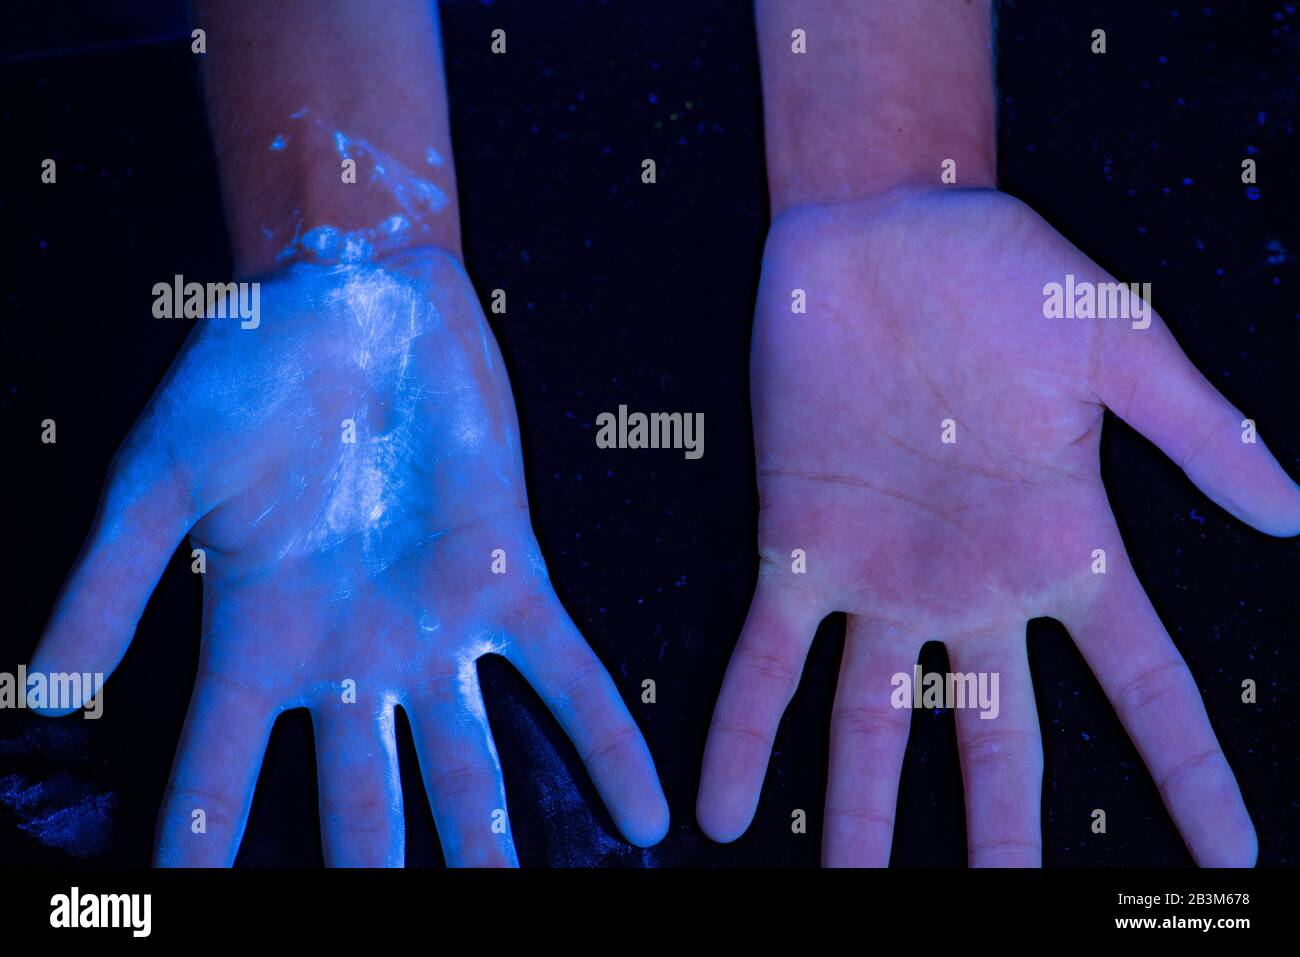 Lavage des mains - utilisation d'UV pour montrer l'efficacité Banque D'Images